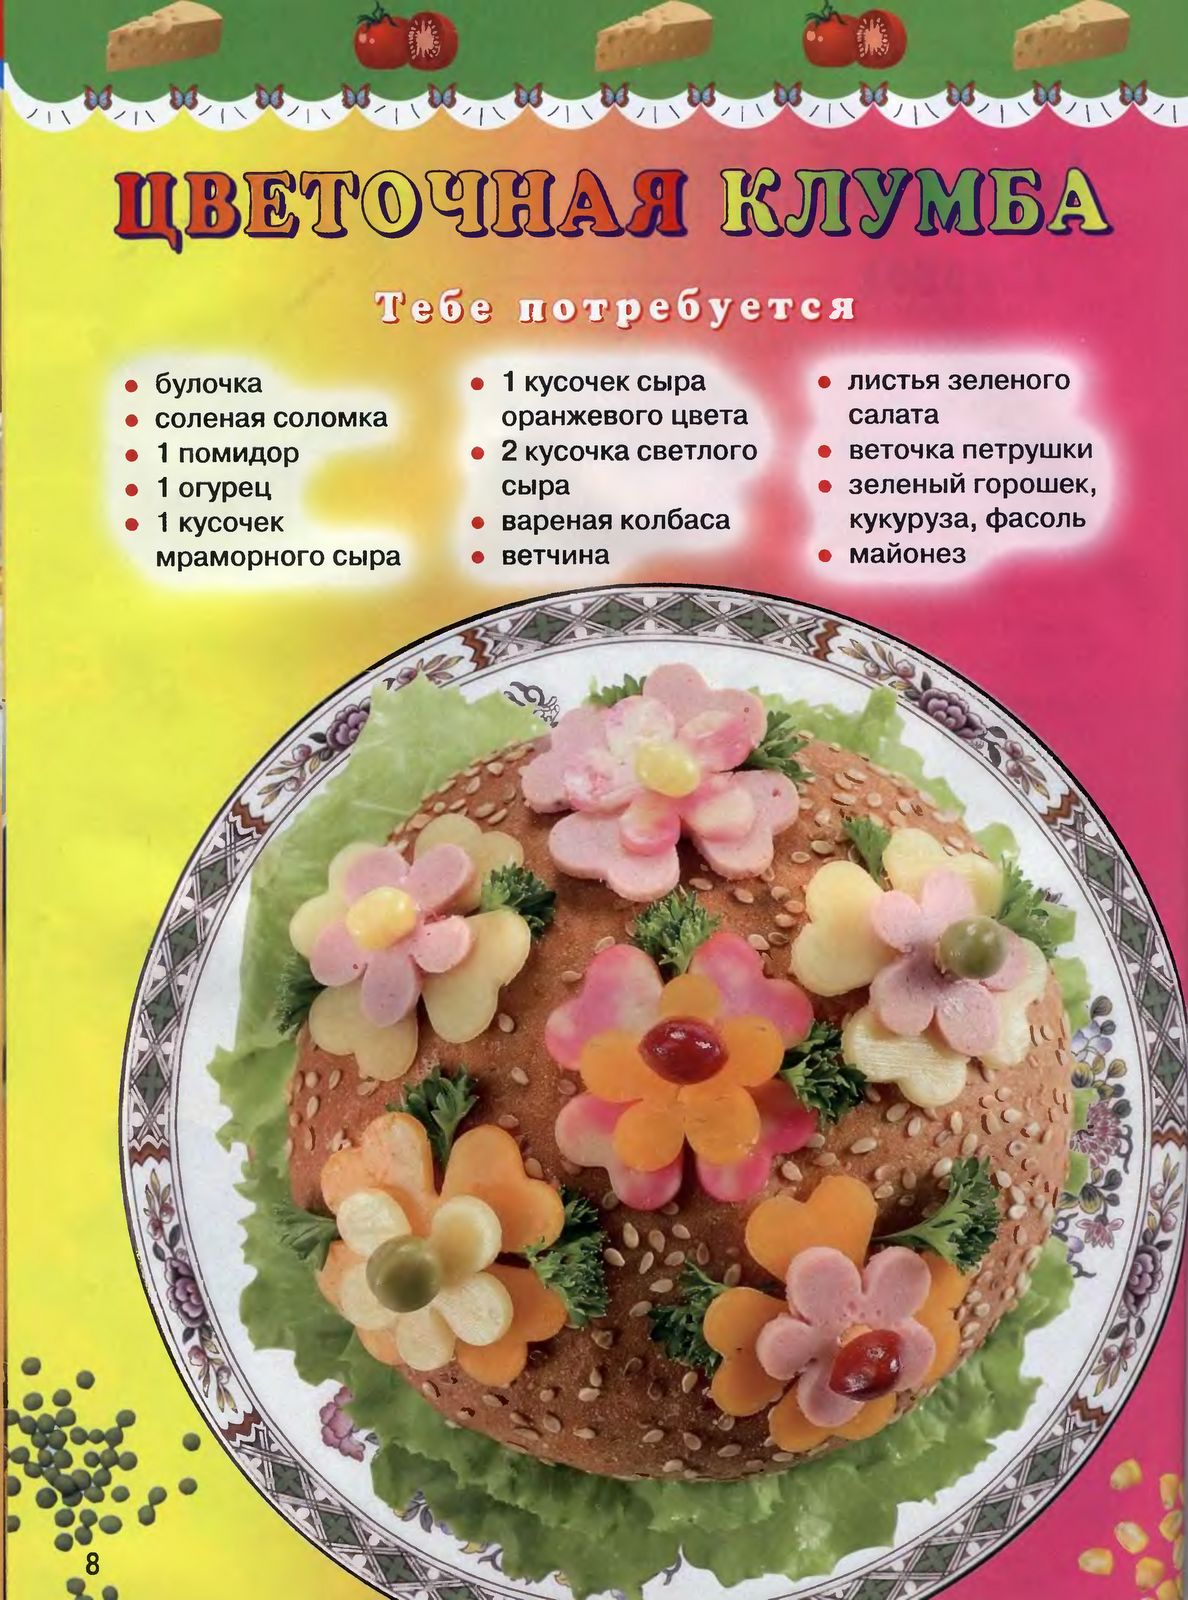 Рецепты блюд для детей в детском саду